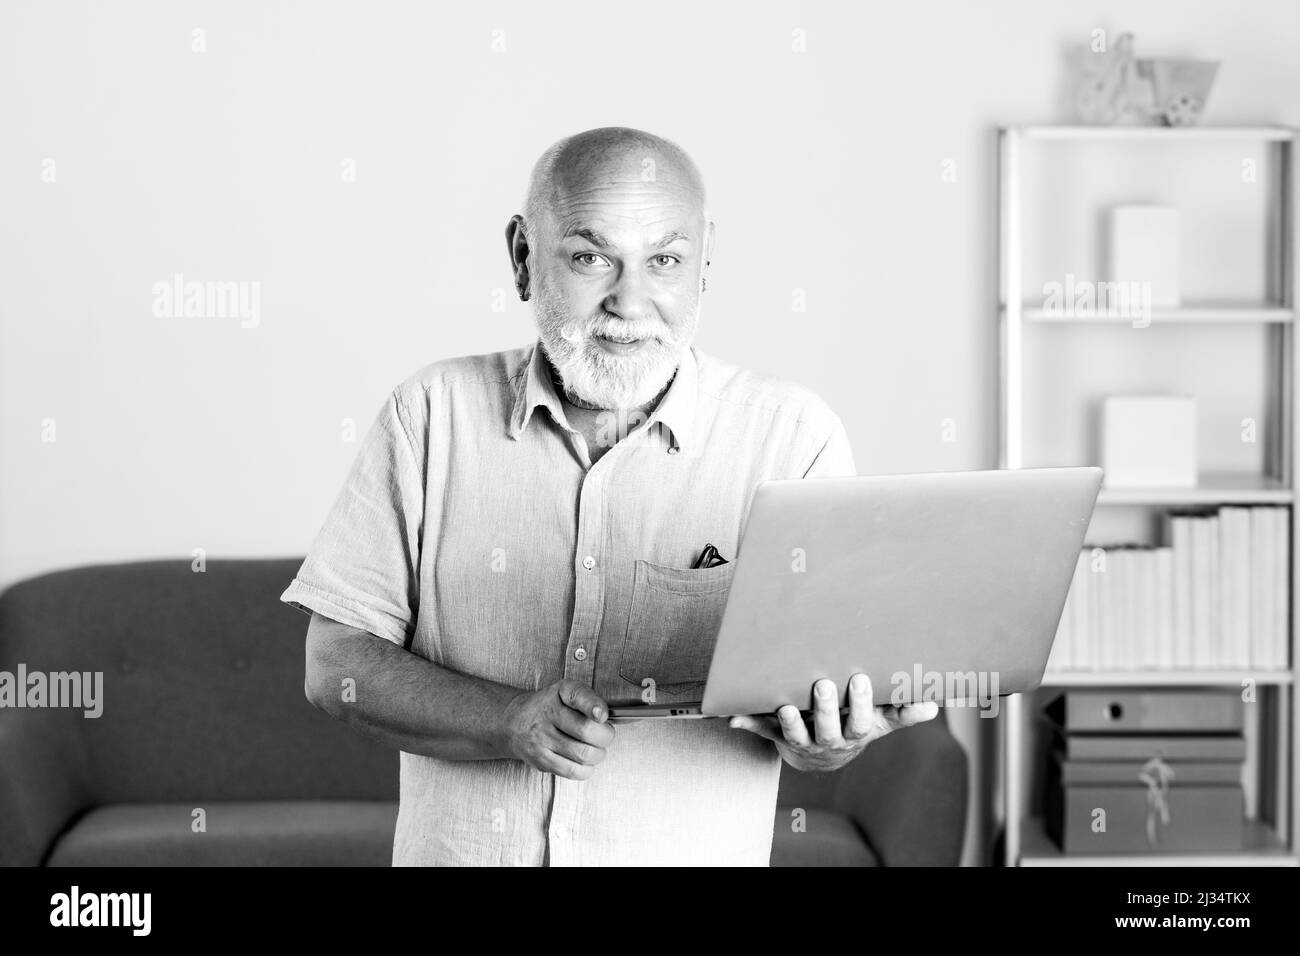 Grand-père, portrait d'un homme âgé avec un ordinateur portable.Homme âgé avec une barbe grise à la maison.Homme mature utilisant un ordinateur. Banque D'Images